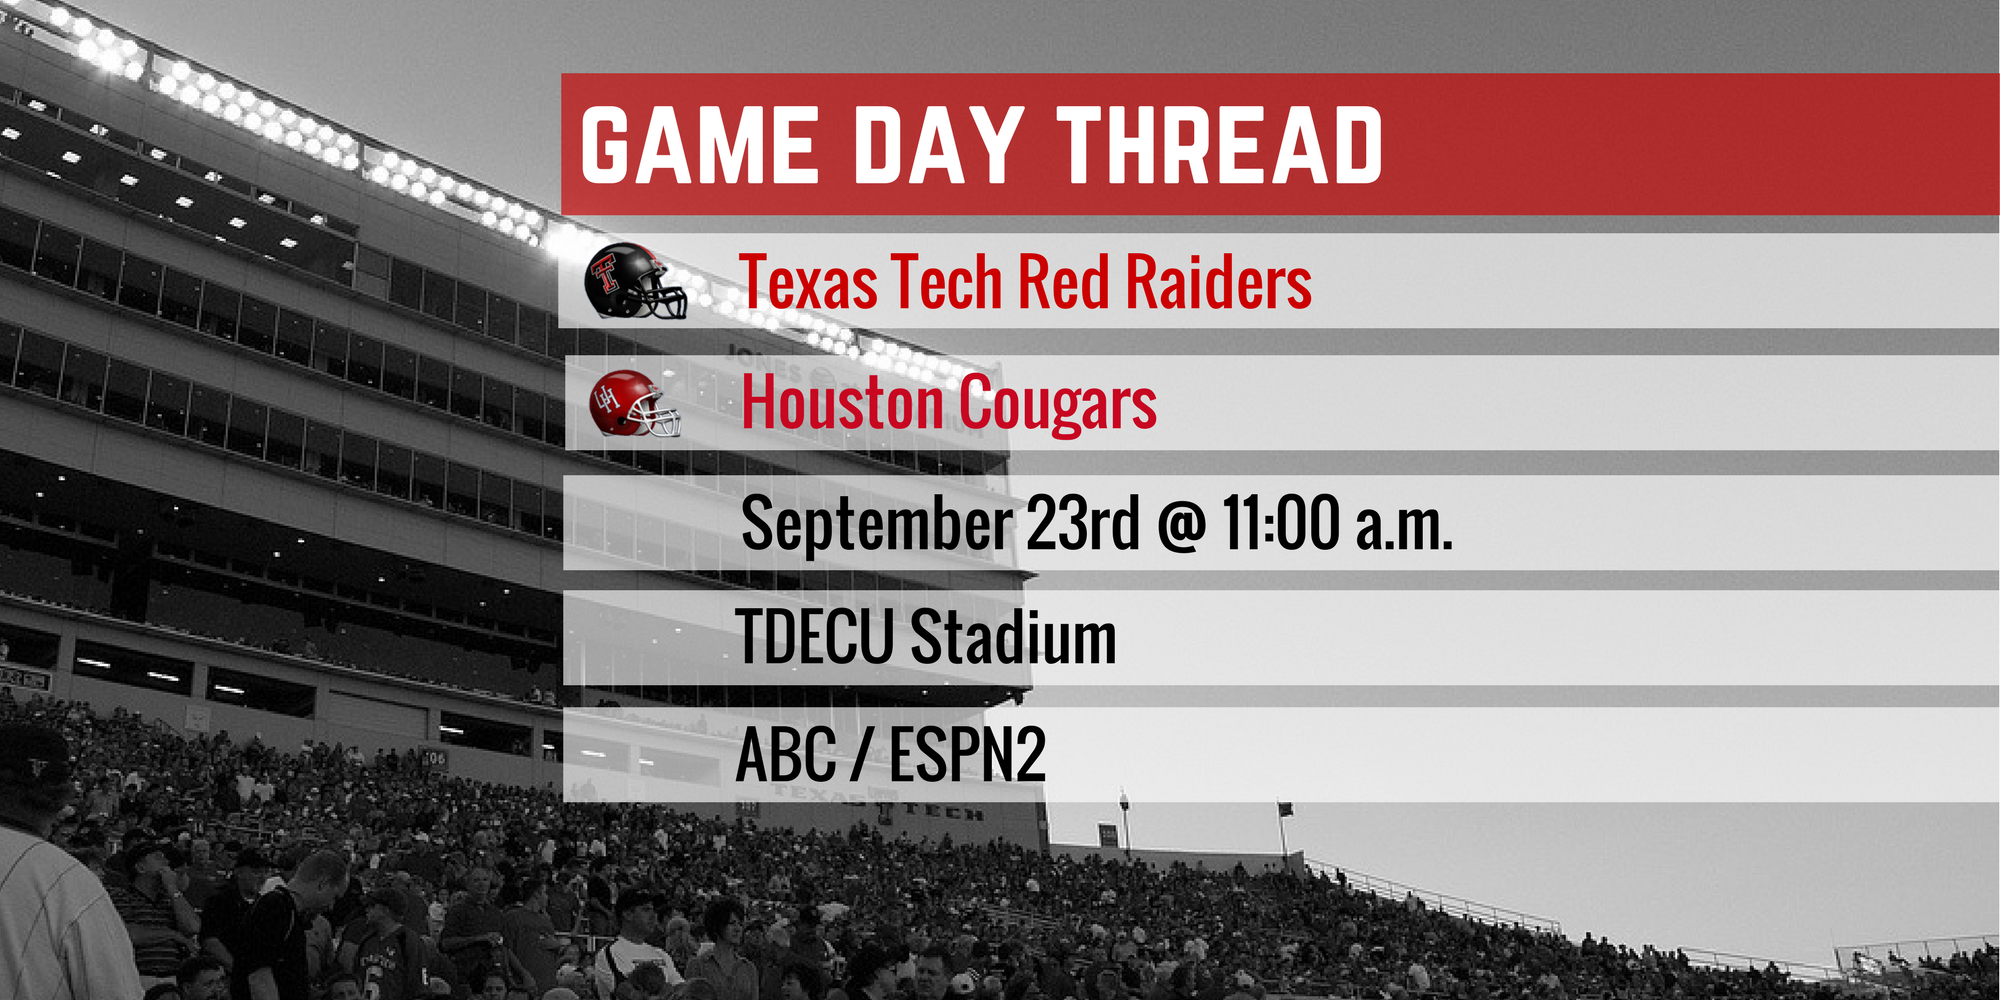 Game Day Thread I: Texas Tech vs. Houston